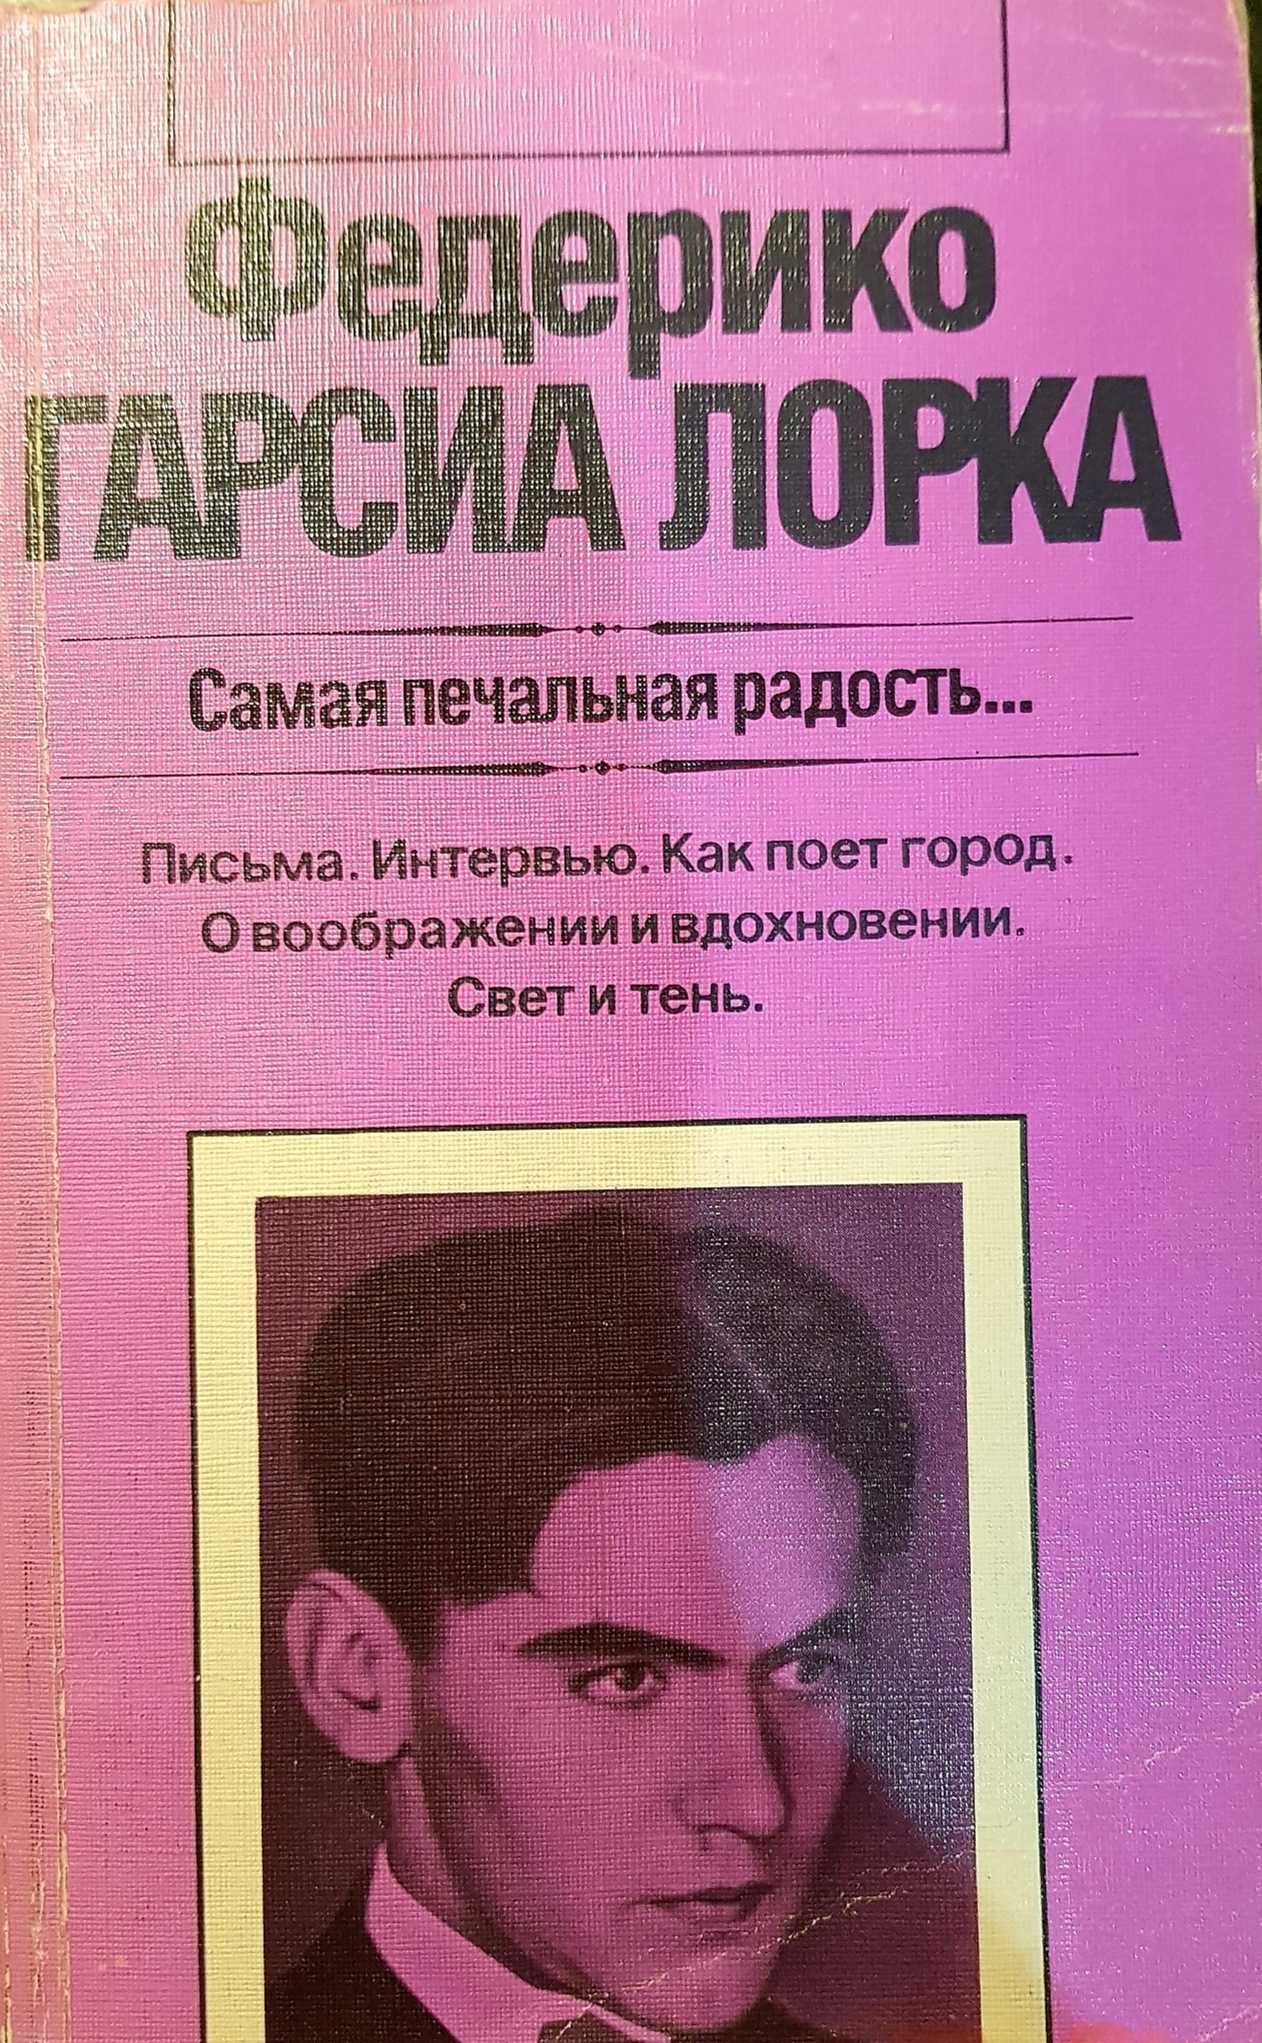 Фредерико Гарсиа Лорка "Самая печальная радость..." авт.сборник 1987 г